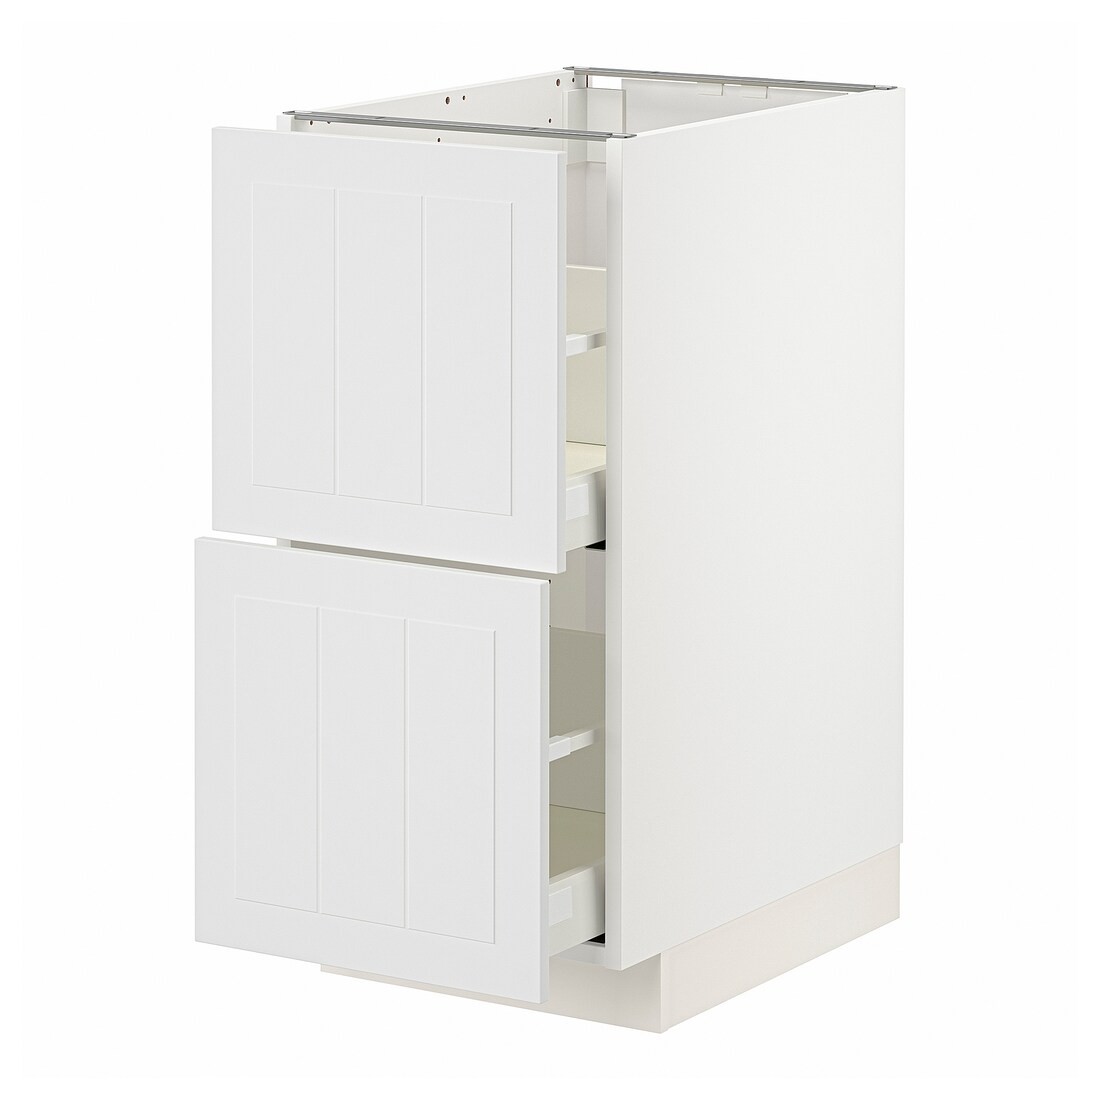 IKEA METOD МЕТОД / MAXIMERA МАКСИМЕРА Напольный шкаф с ящиками, белый / Stensund белый, 40x60 см 19409466 194.094.66